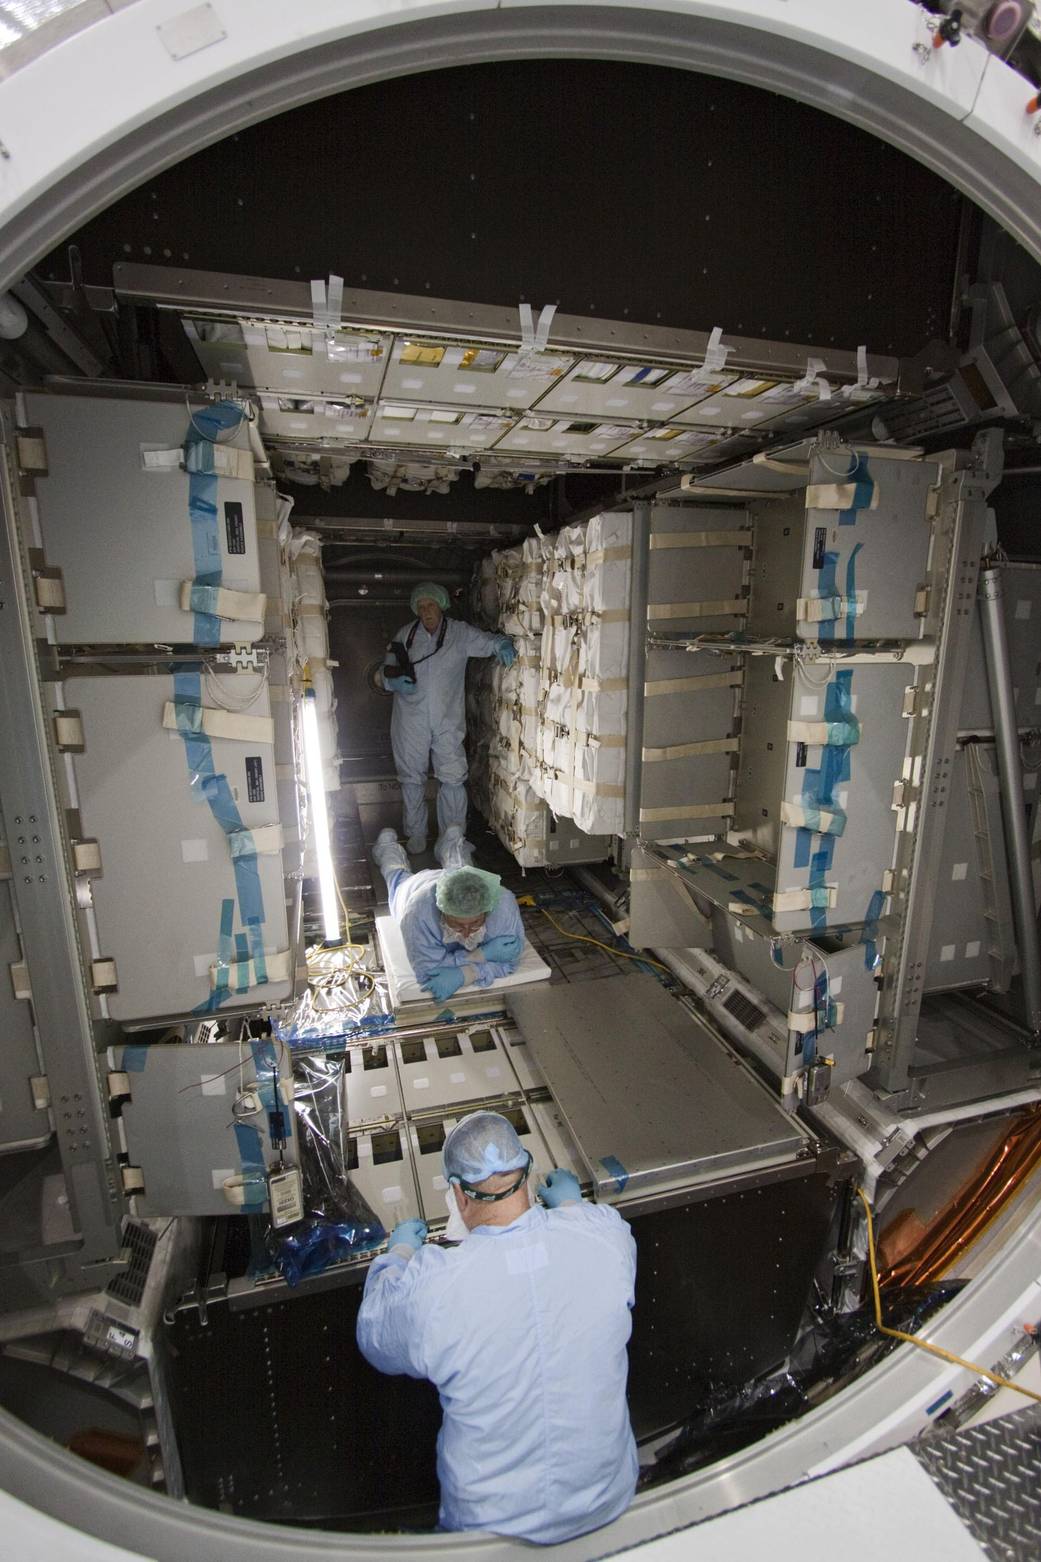 Technicians install cargo inside the Raffaello multi-purpose logistics module in preparation for the STS-135 mission.